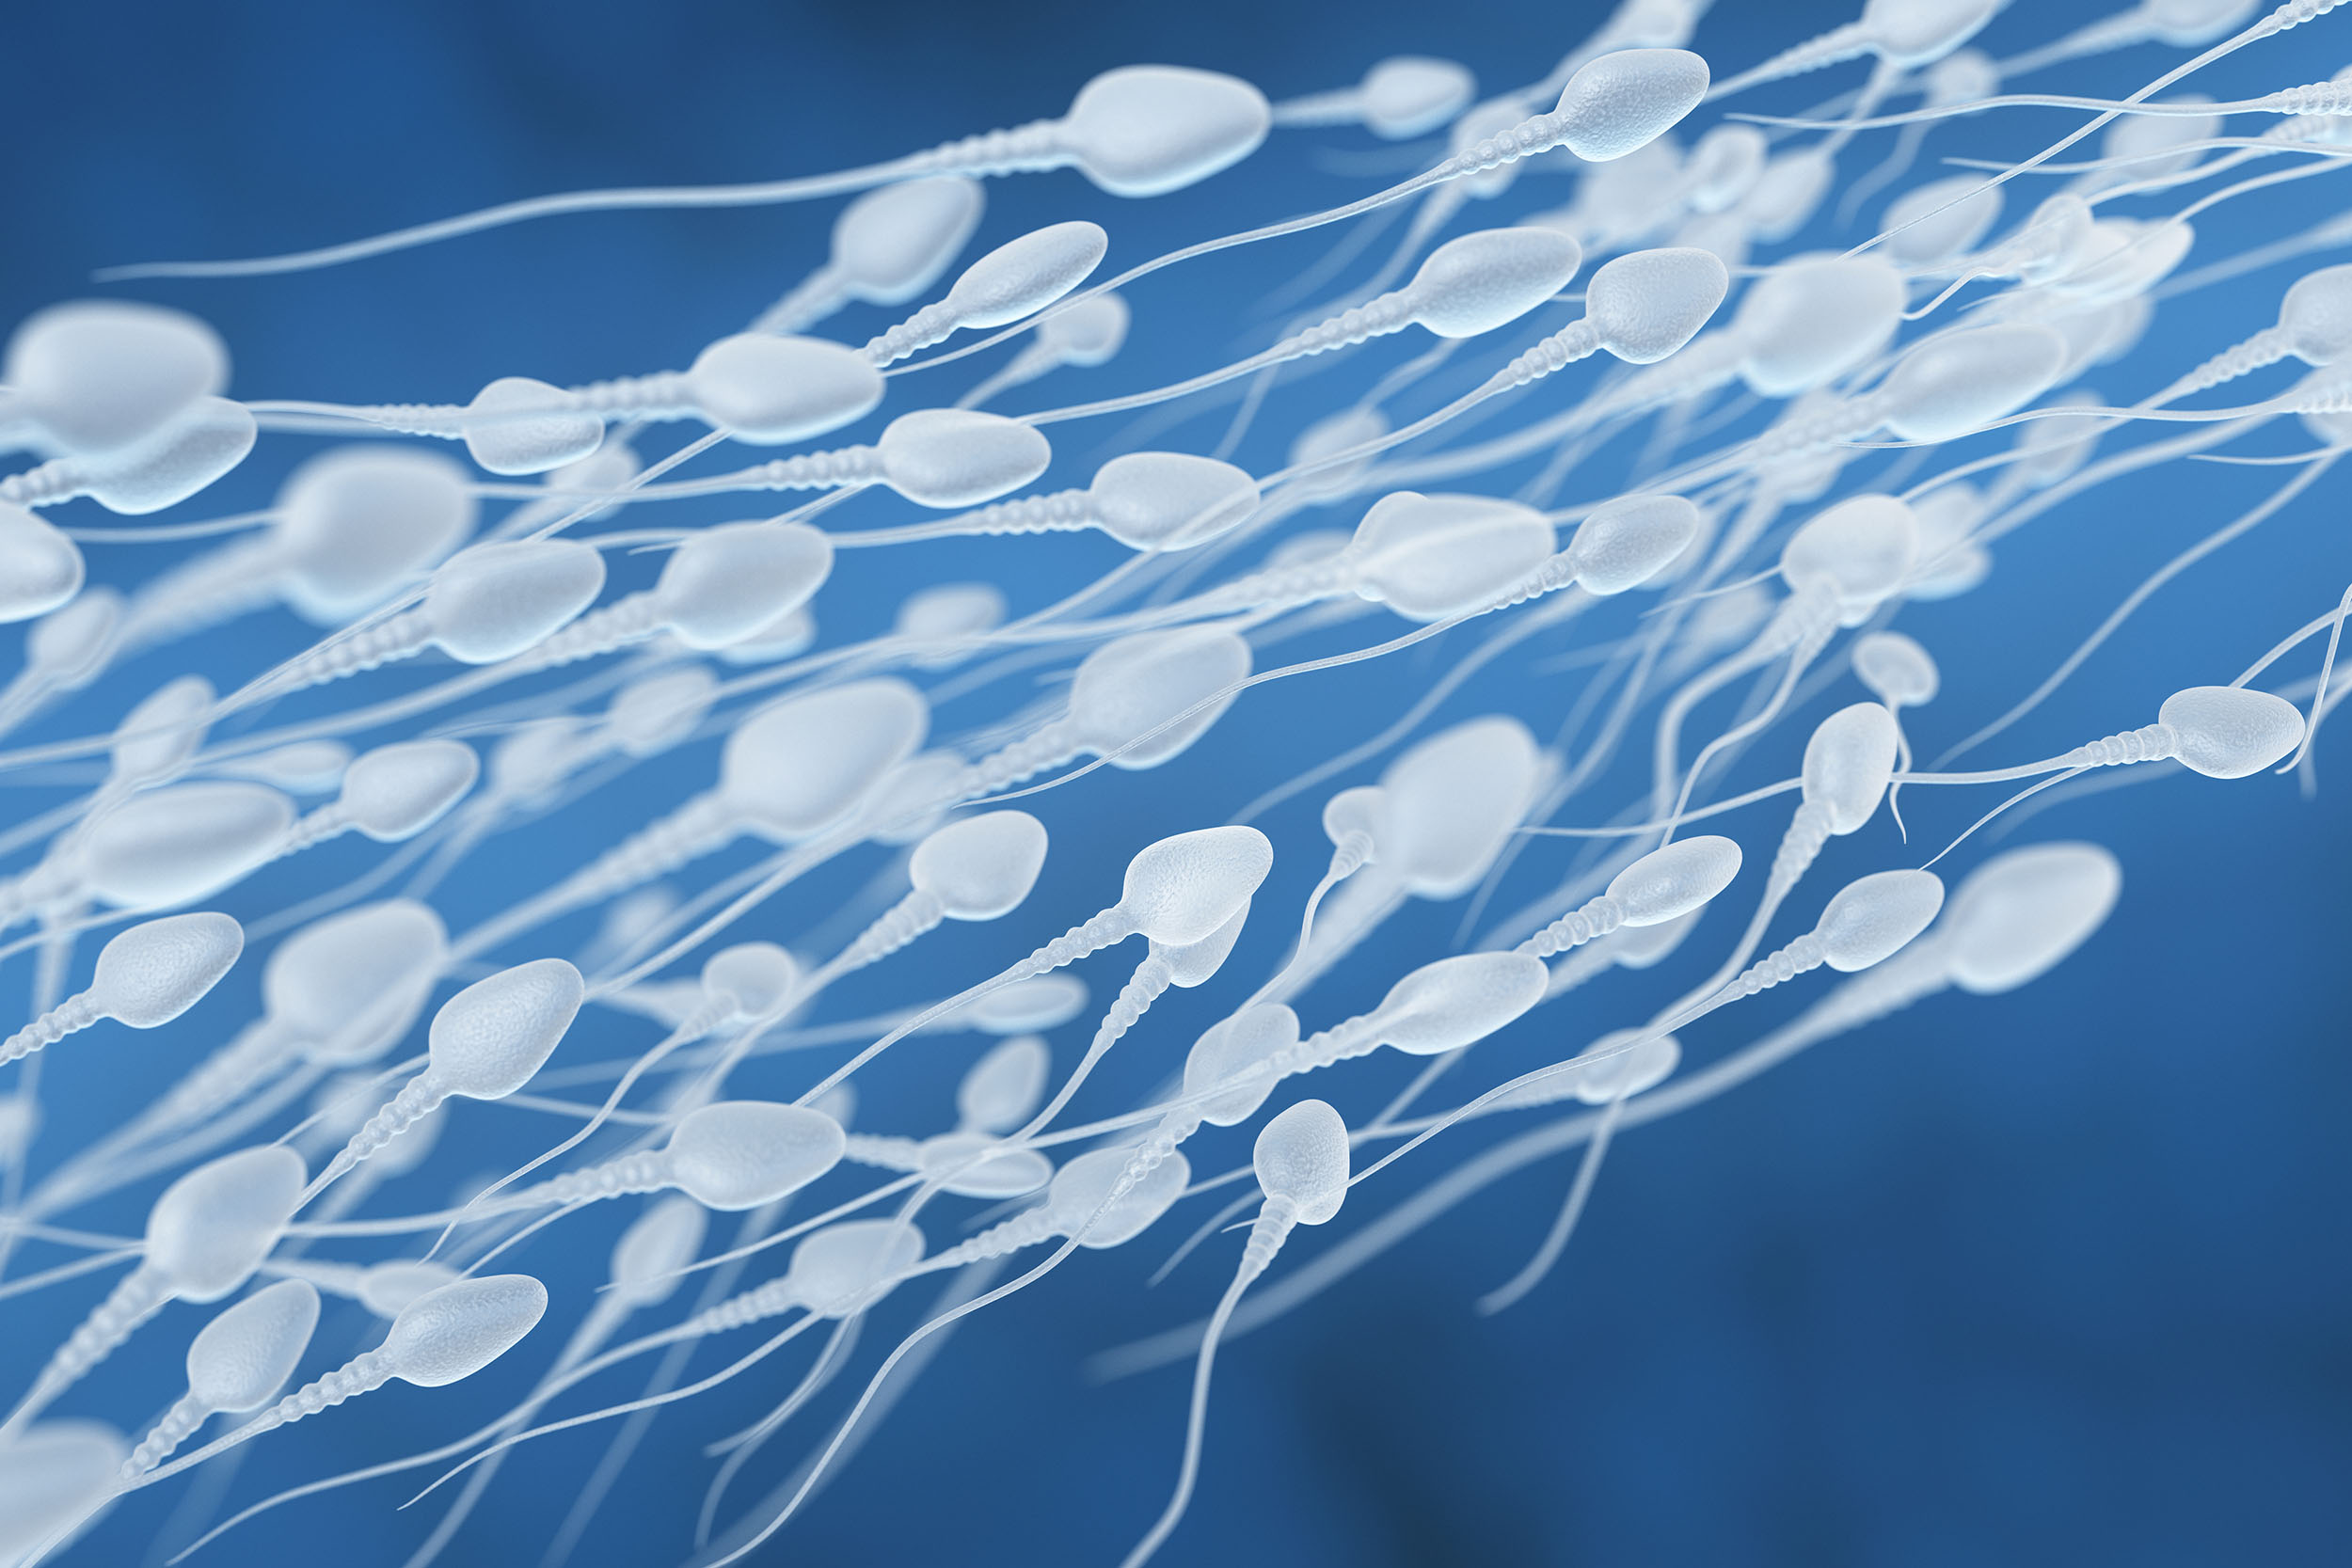 Sperm Retrieval